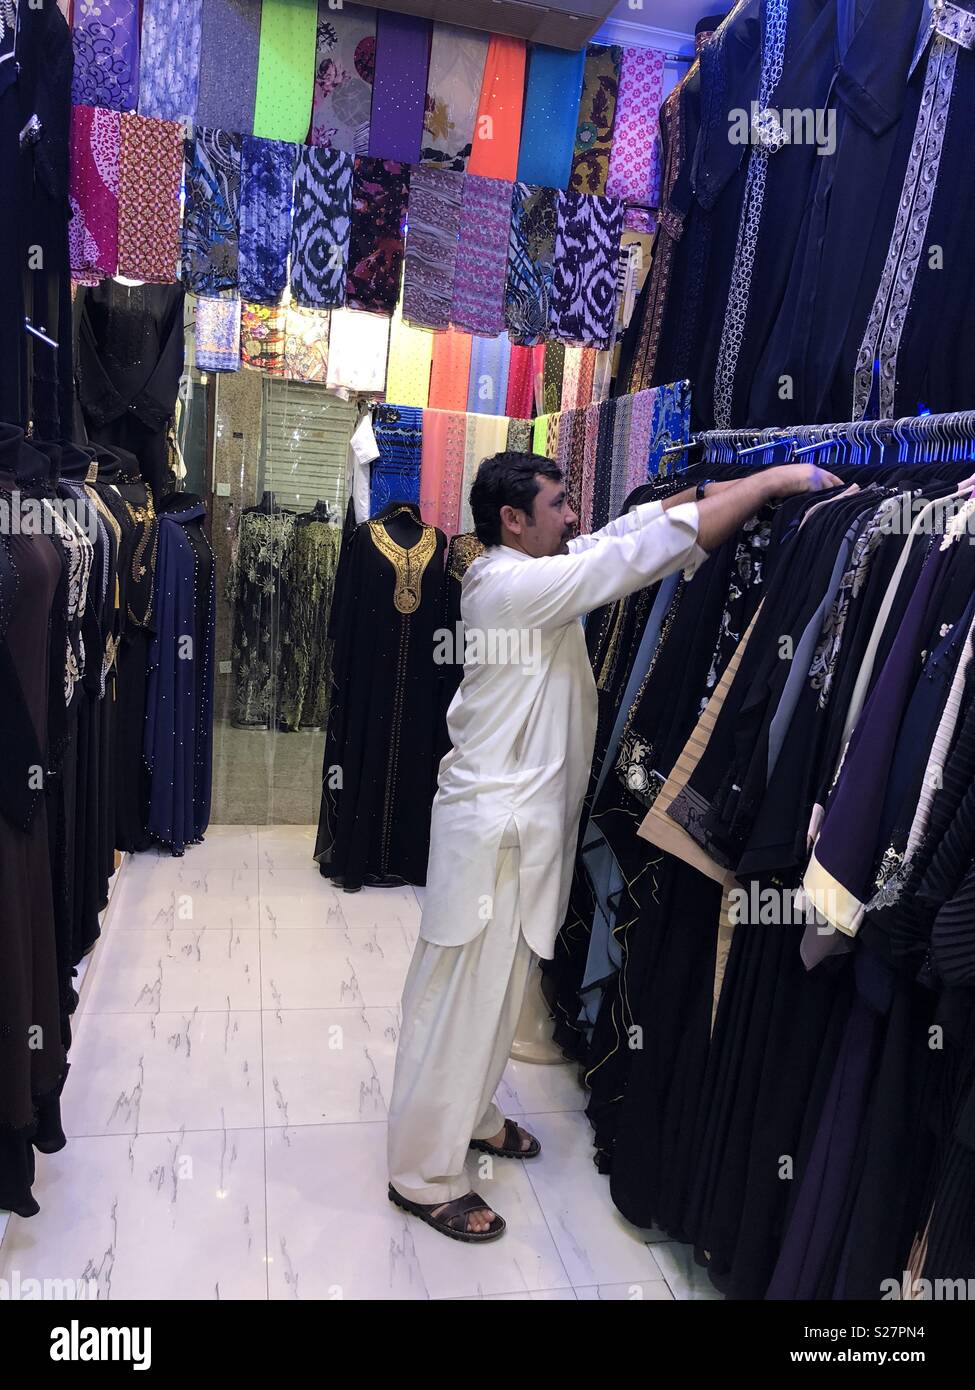 Man in abaya shop Stock Photo - Alamy